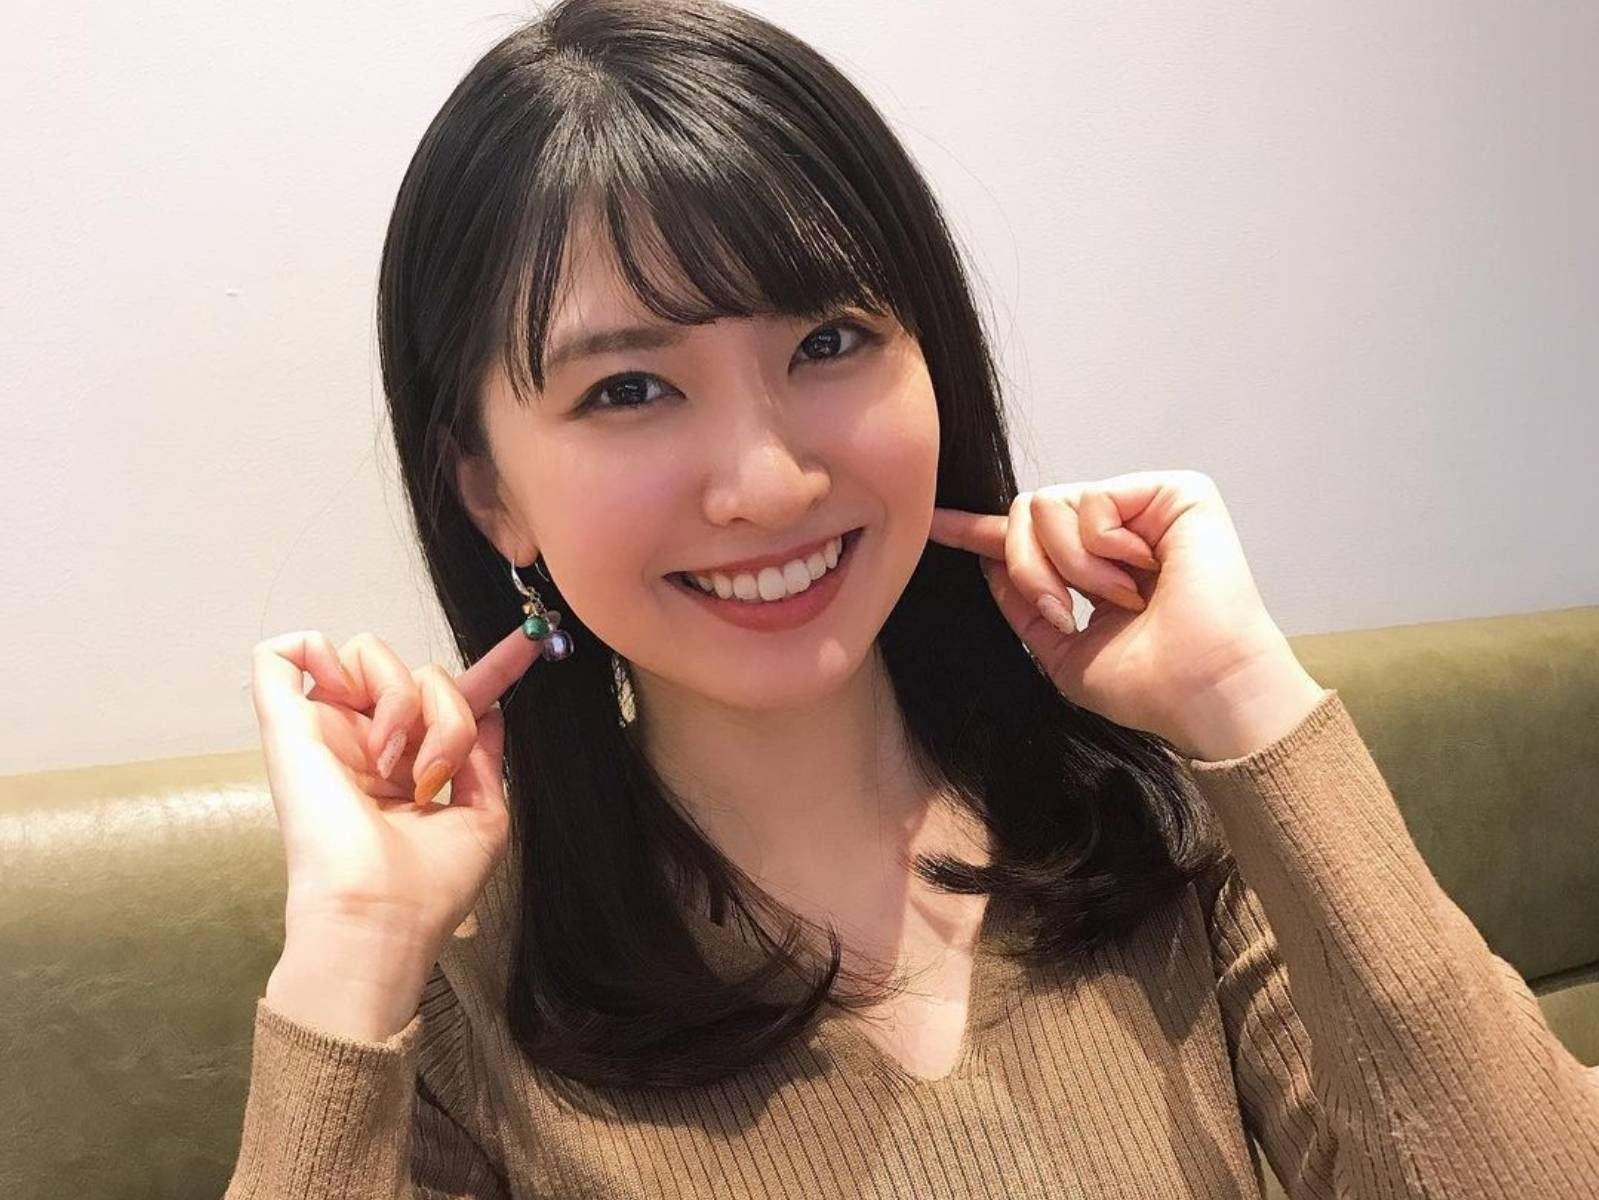 日本美女氣象主播檜山沙耶播報咬到舌頭，甜美形象讓網友 15 秒畫面狂刷百萬點擊！